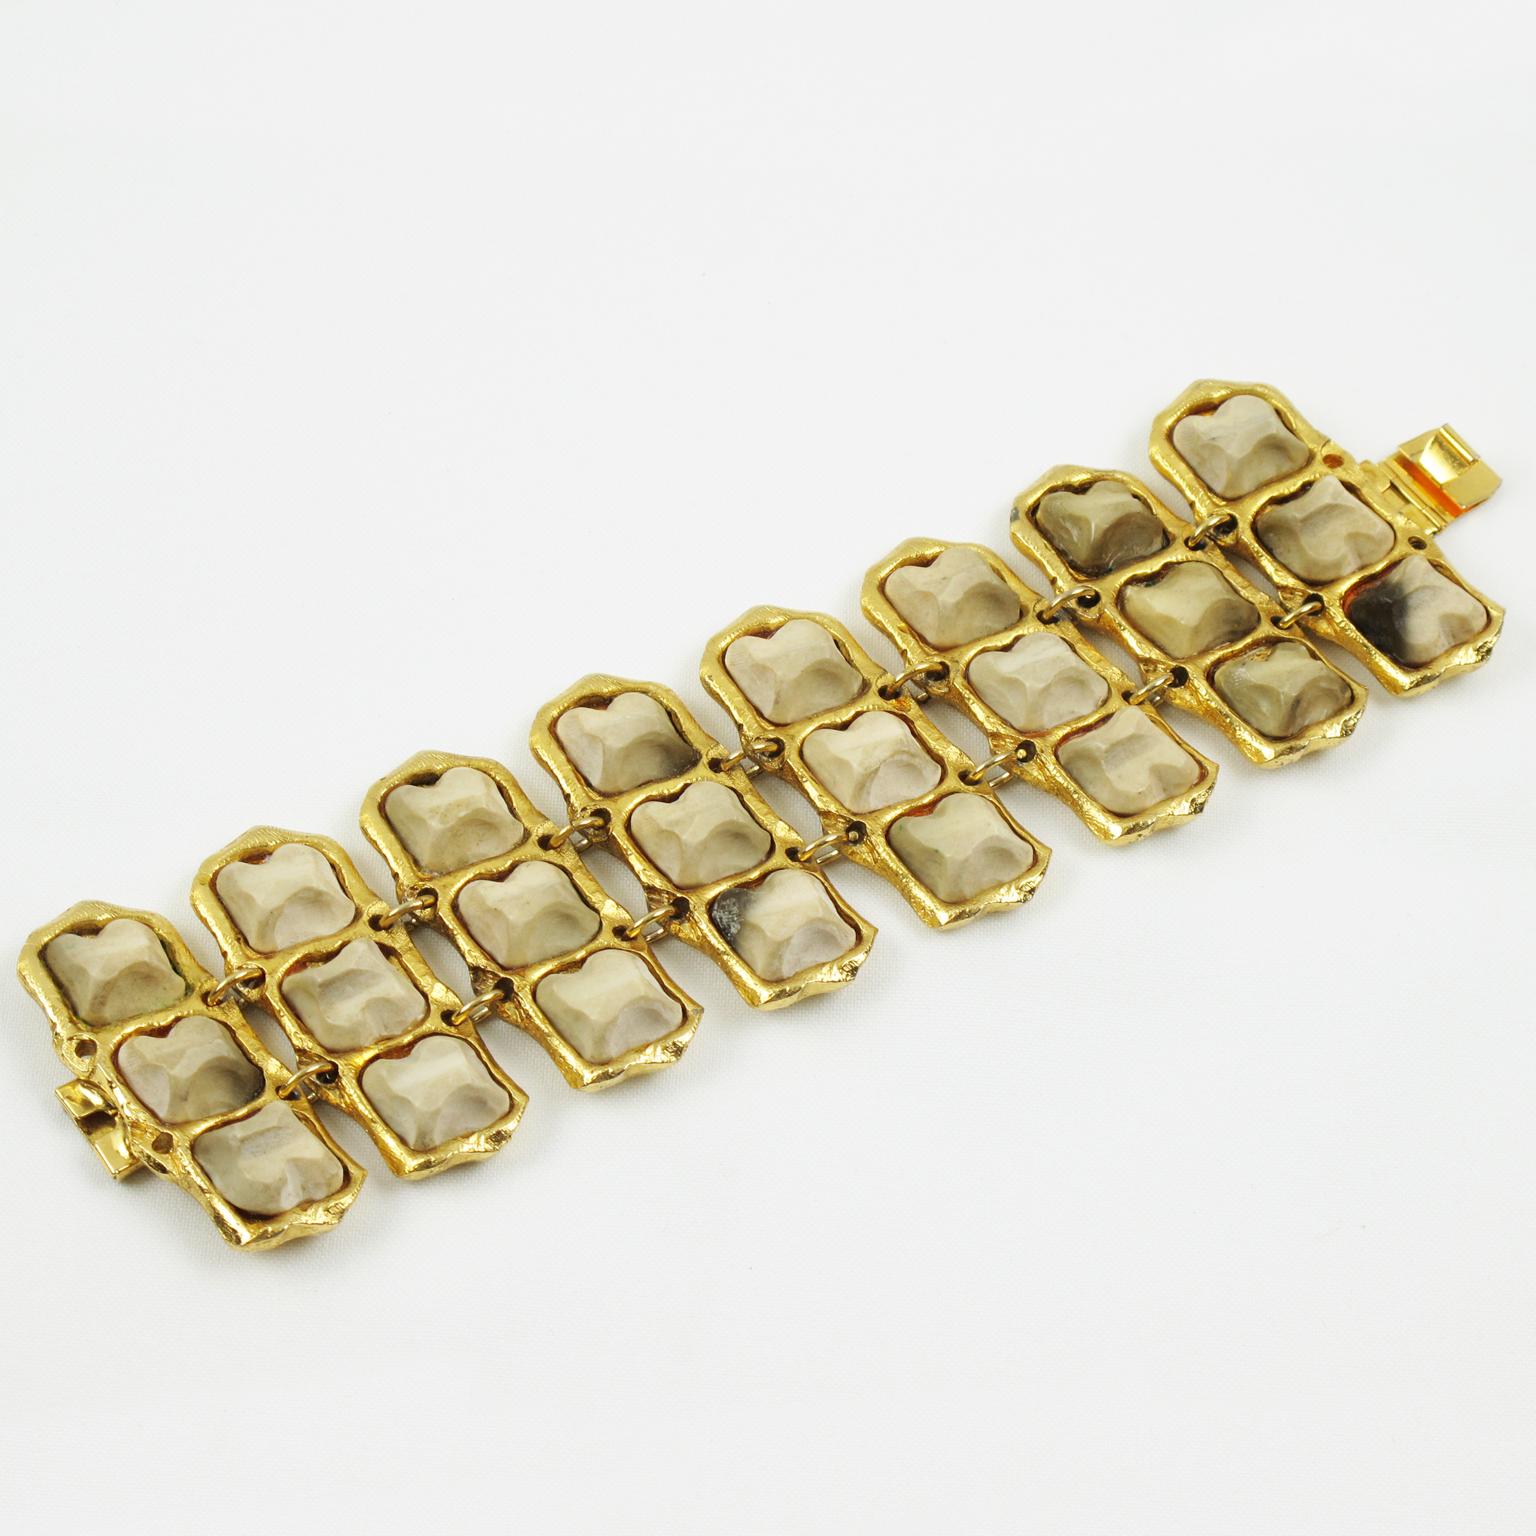 Ce spectaculaire bracelet à maillons Kalinger Paris présente un encadrement surdimensionné et dimensionnel en métal doré texturé, surmonté de galets en résine sculptés dans une texture semblable à celle du marbre. L'encadrement métallique a un